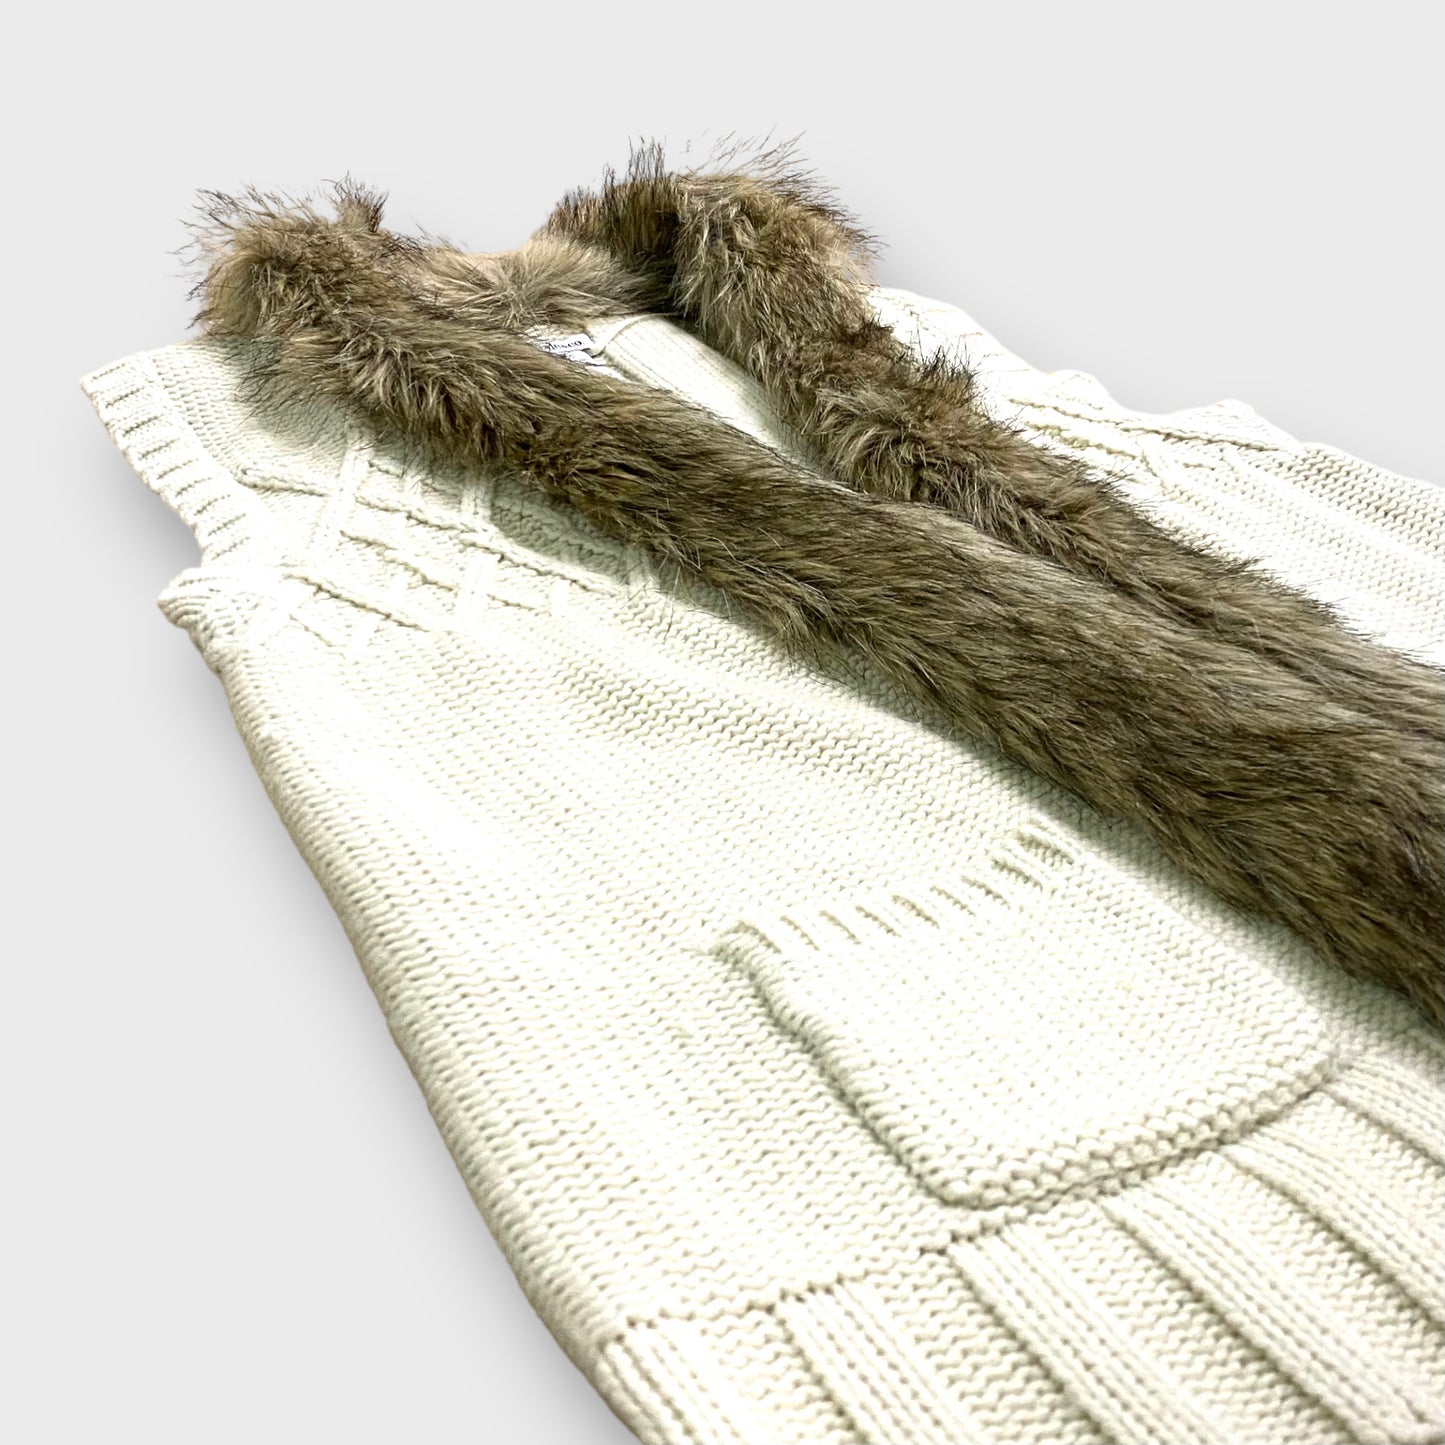 Fur design knit vest